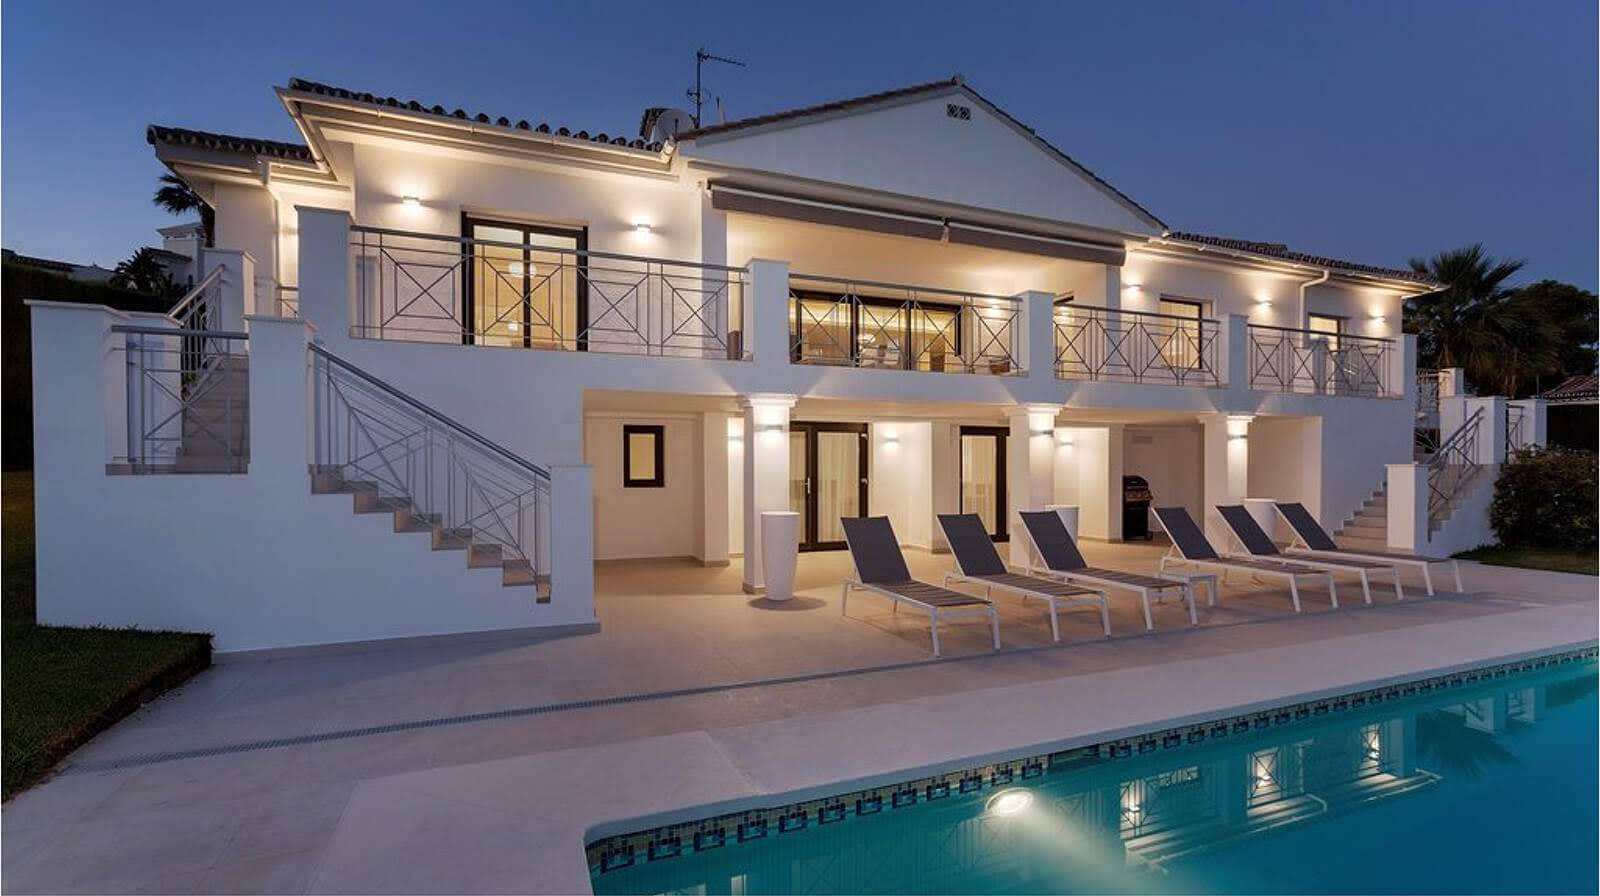 Coastal Mediterranean Villa exterior pool terrace